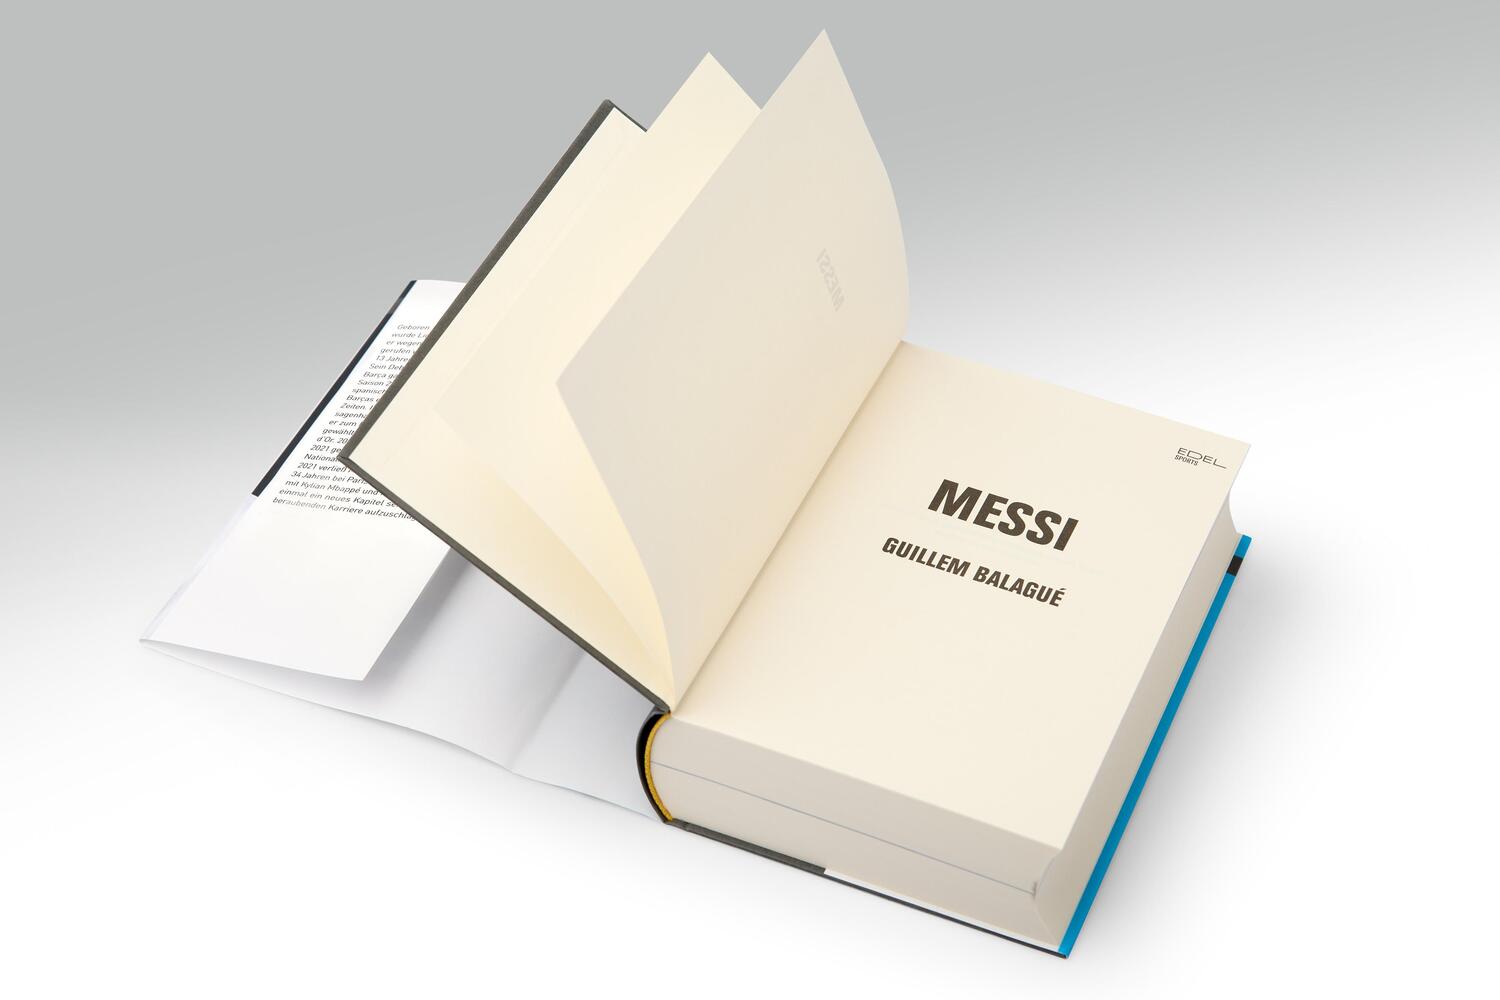 Bild: 9783985880768 | Messi - Die autorisierte Biografie des Weltmeisters | Guillem Balagué